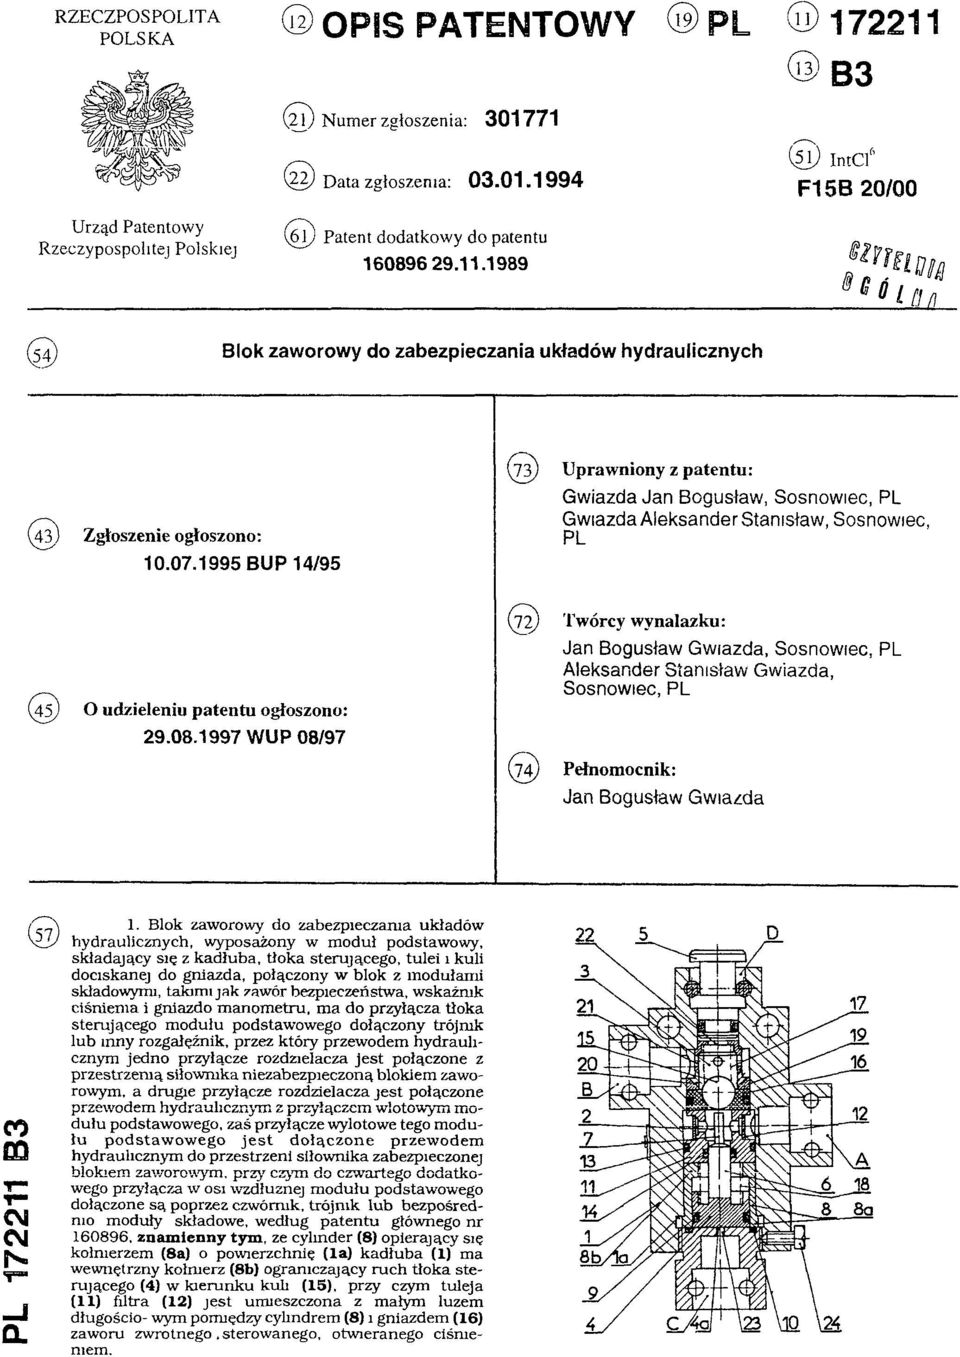 07.1995 BUP 14/95 ( 7 3 ) Uprawniony z patentu: Gwiazda Jan Bogusław, Sosnowiec, PL Gwiazda Aleksander Stanisław, Sosnowiec, PL (45) O udzieleniu patentu ogłoszono: 29.08.